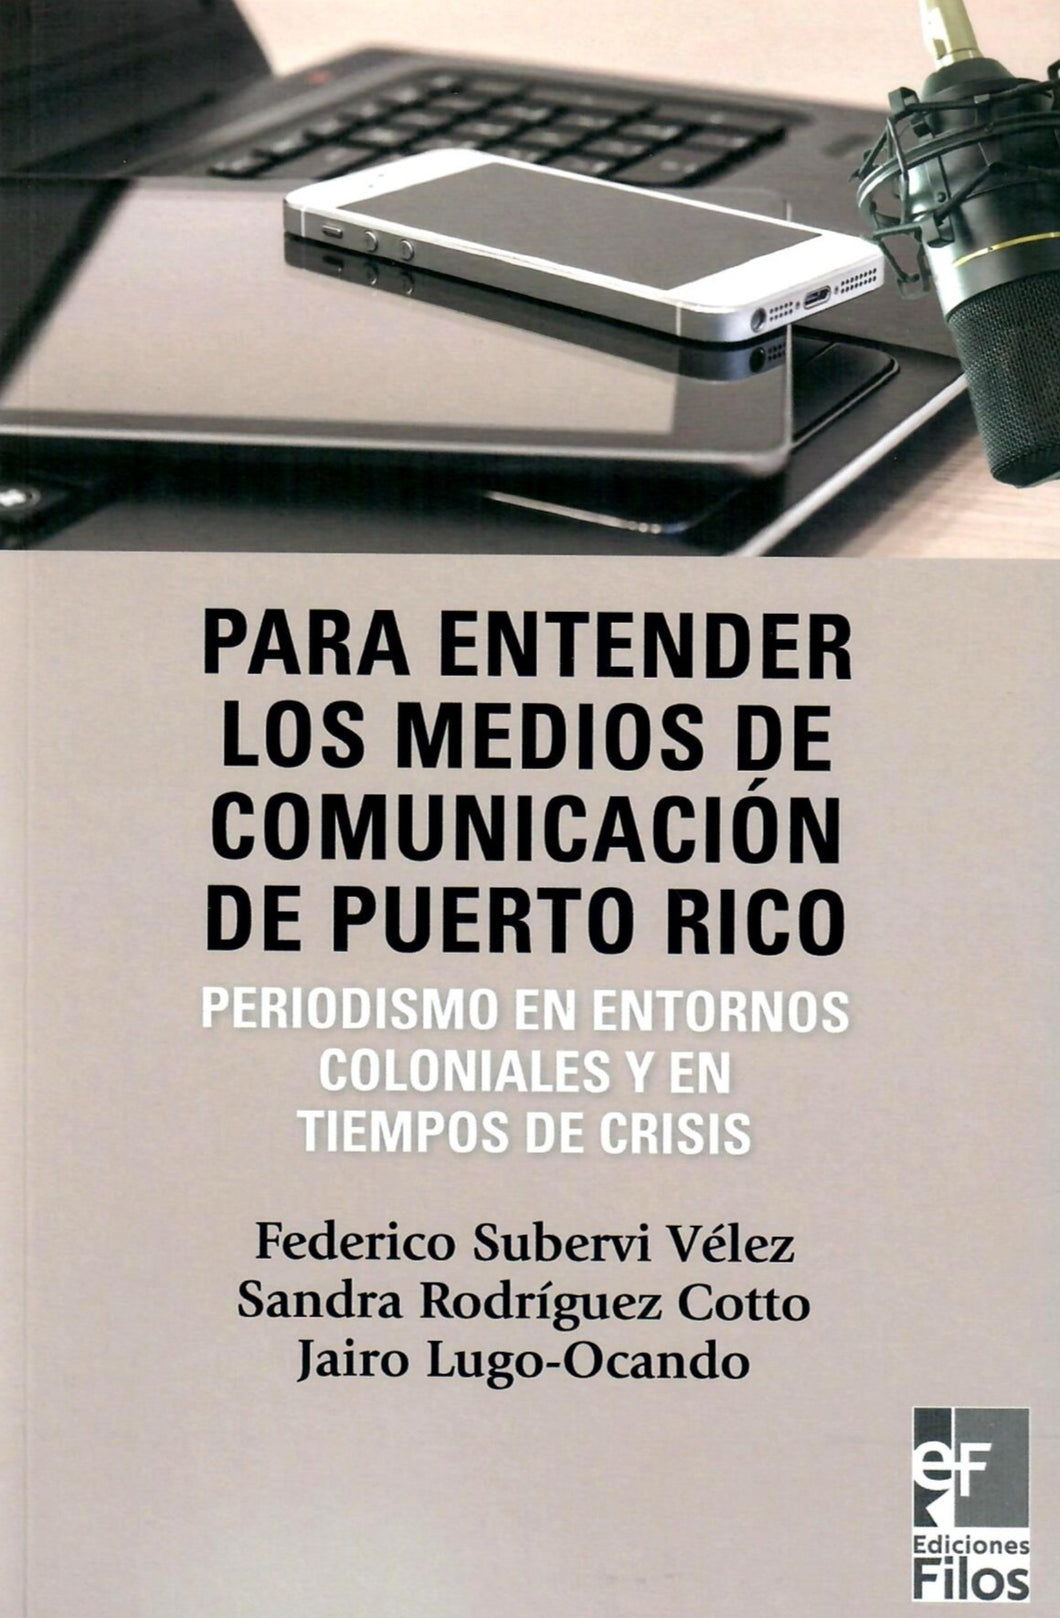 PARA ENTENDER LOS MEDIOS DE COMUNICACIÓN DE PUERTO RICO - Federico Subervi Vélez, Sandra Rodríguez Cotto, Jairo Lugo-Ocando